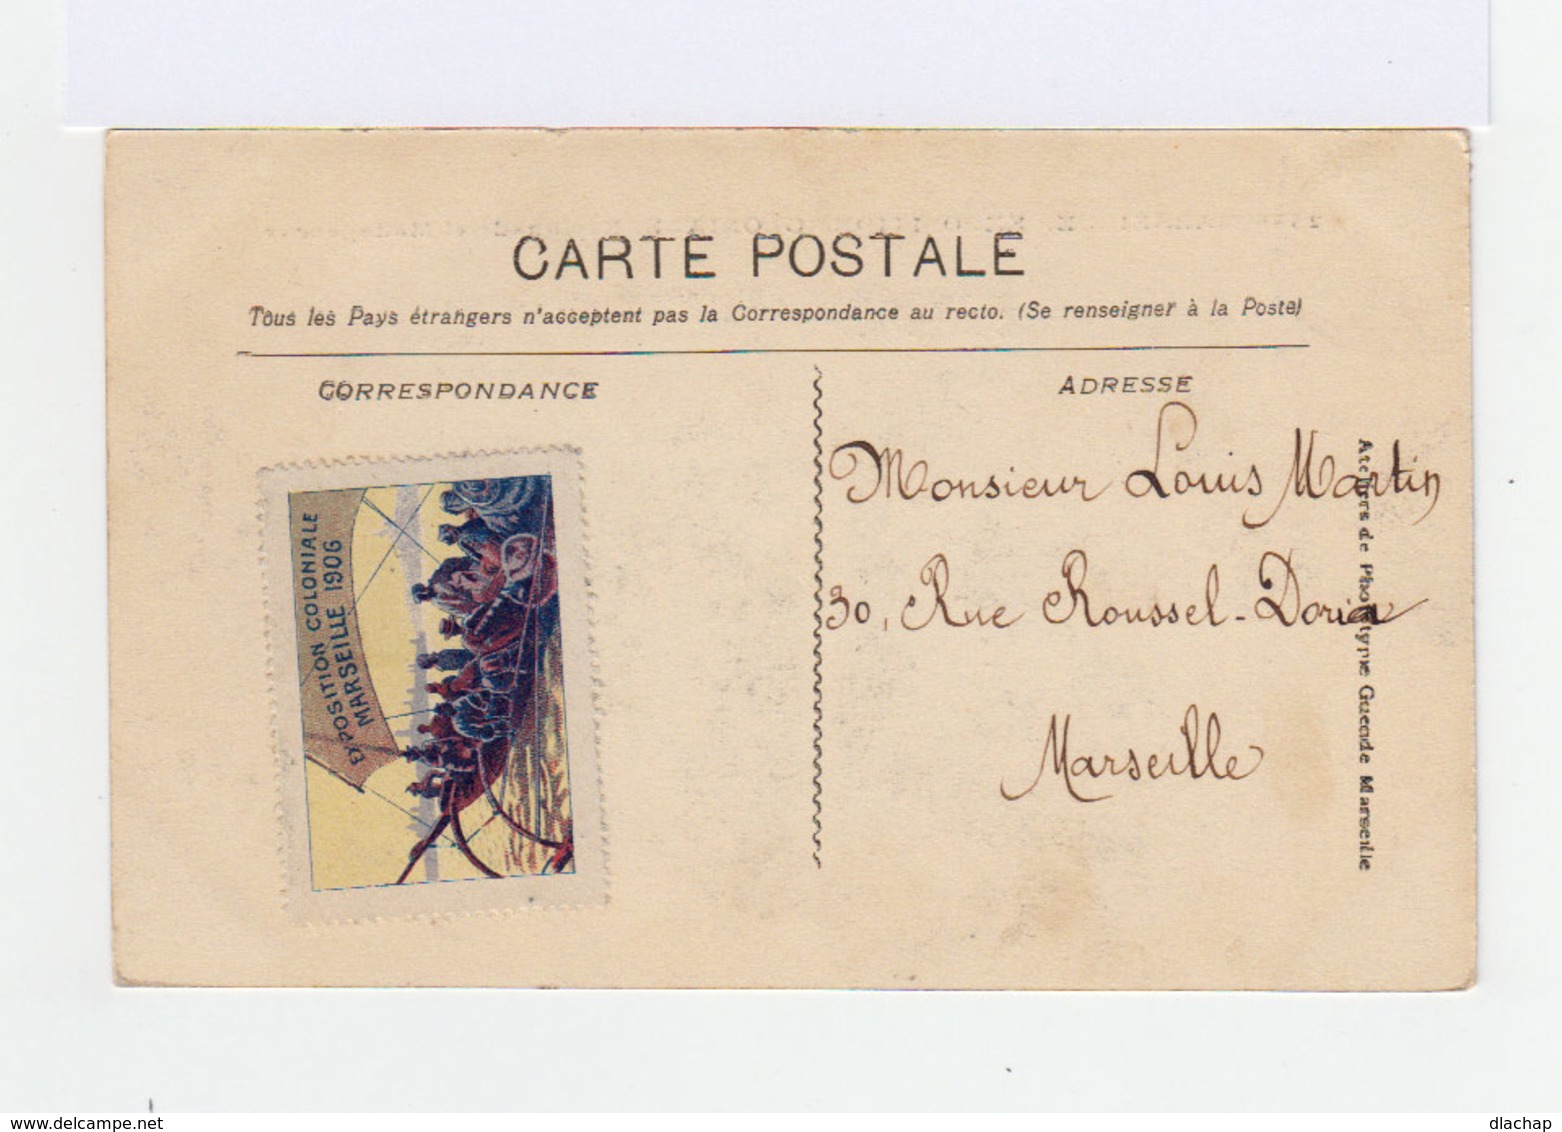 Carte Postale Marseille Vignette Exposition Coloniale. CAD Hexagonal Exposition Coloniale 1906. (869) - Cachets Manuels